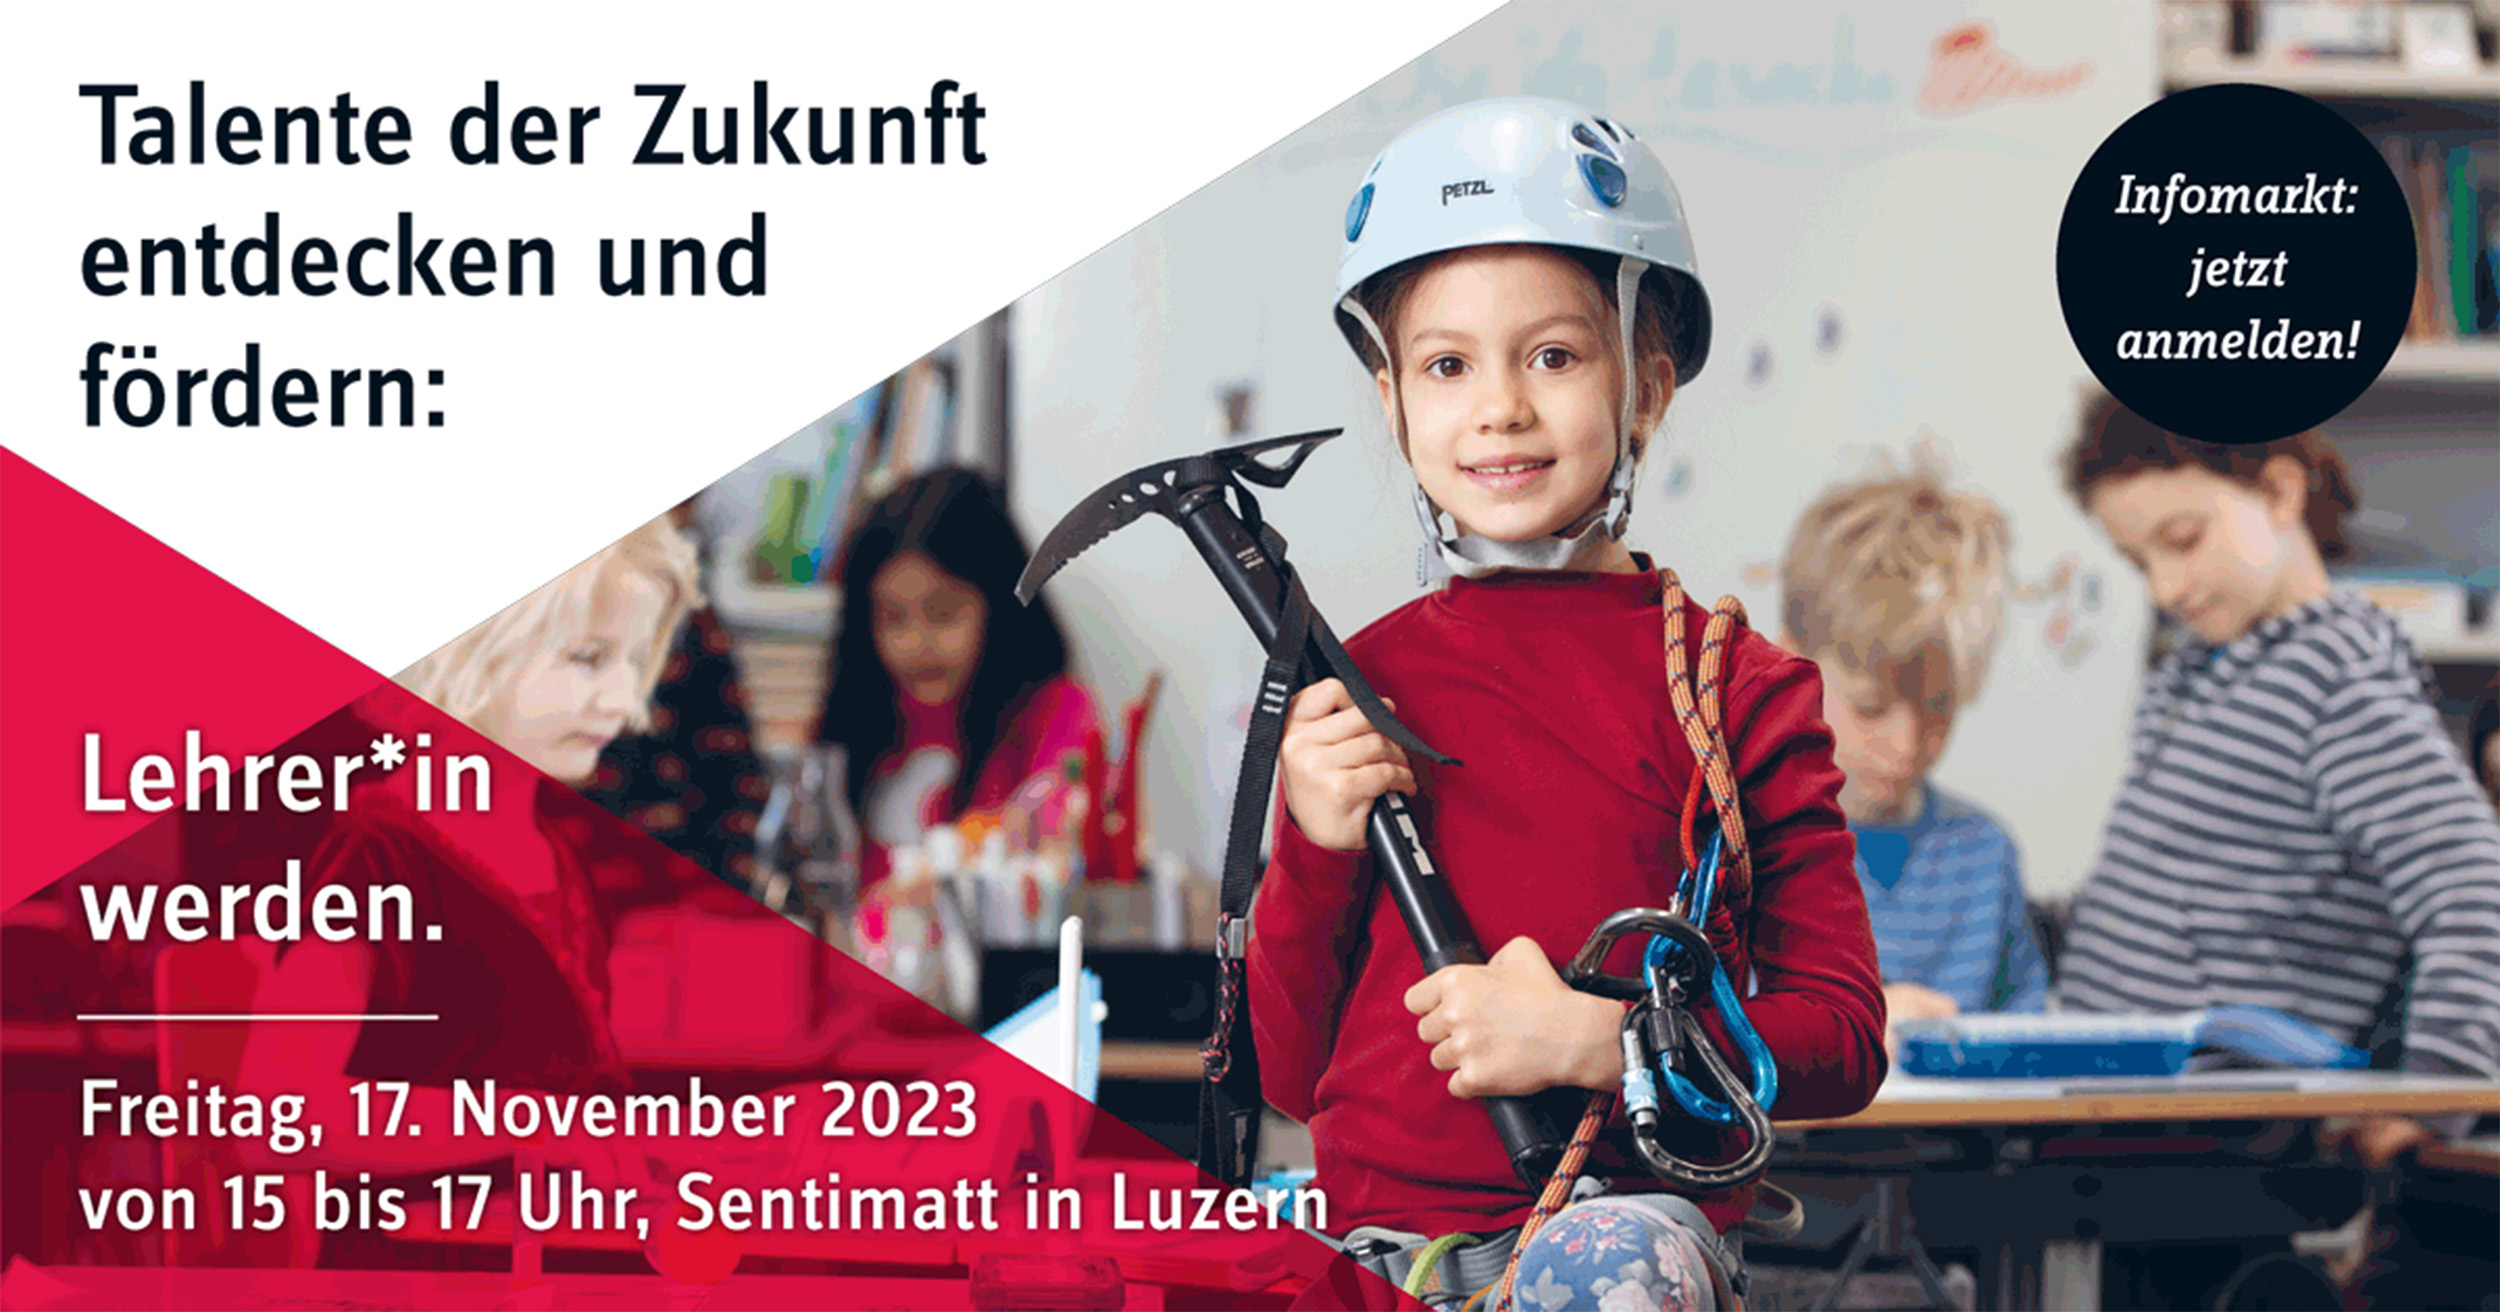 PH Luzern: Infomarkt am 17. November 2023